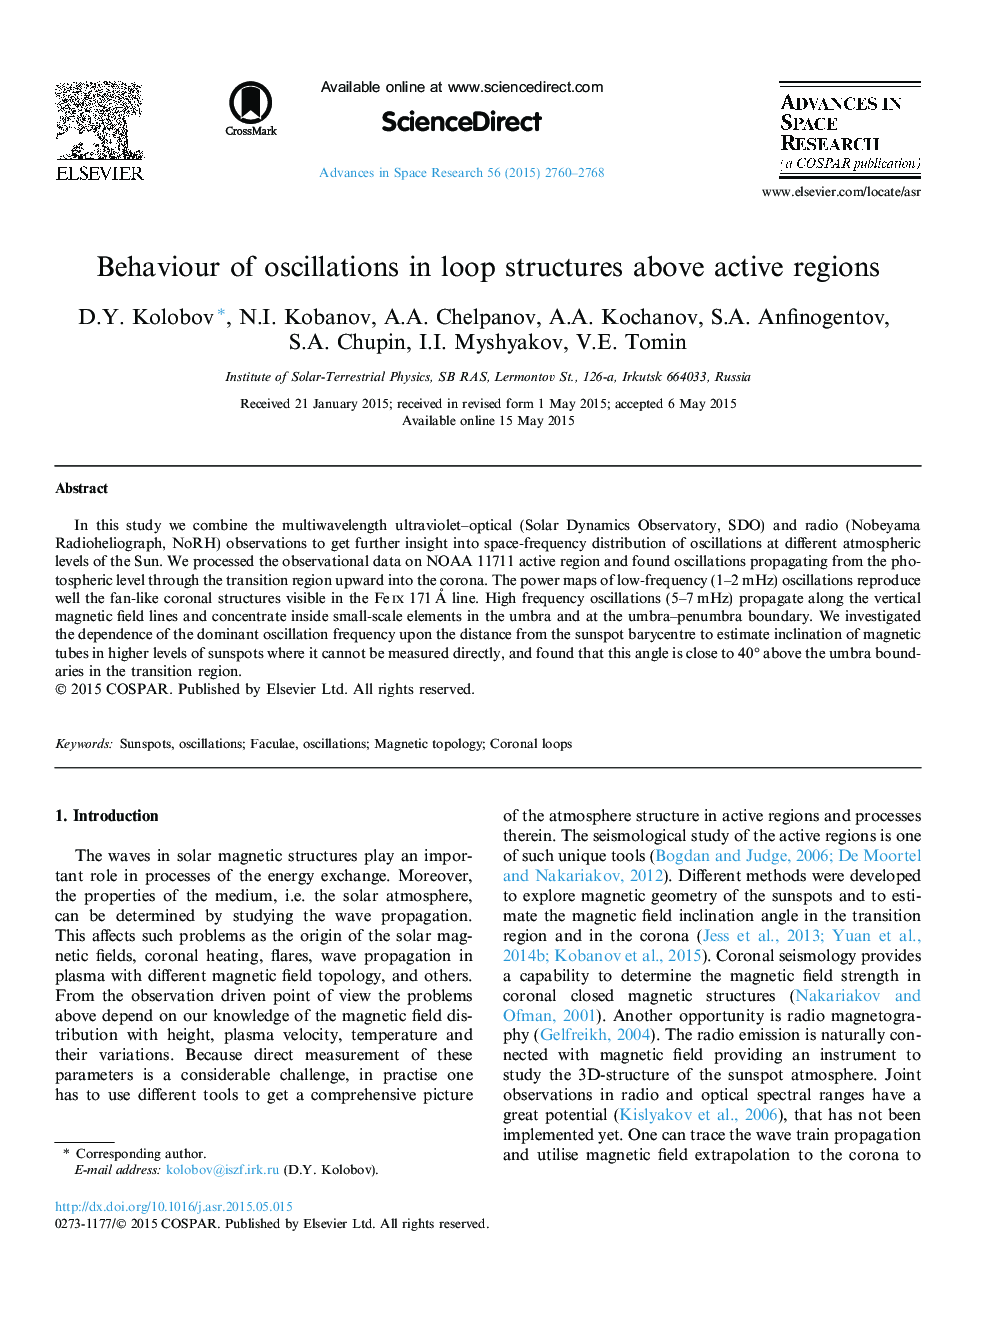 Behaviour of oscillations in loop structures above active regions